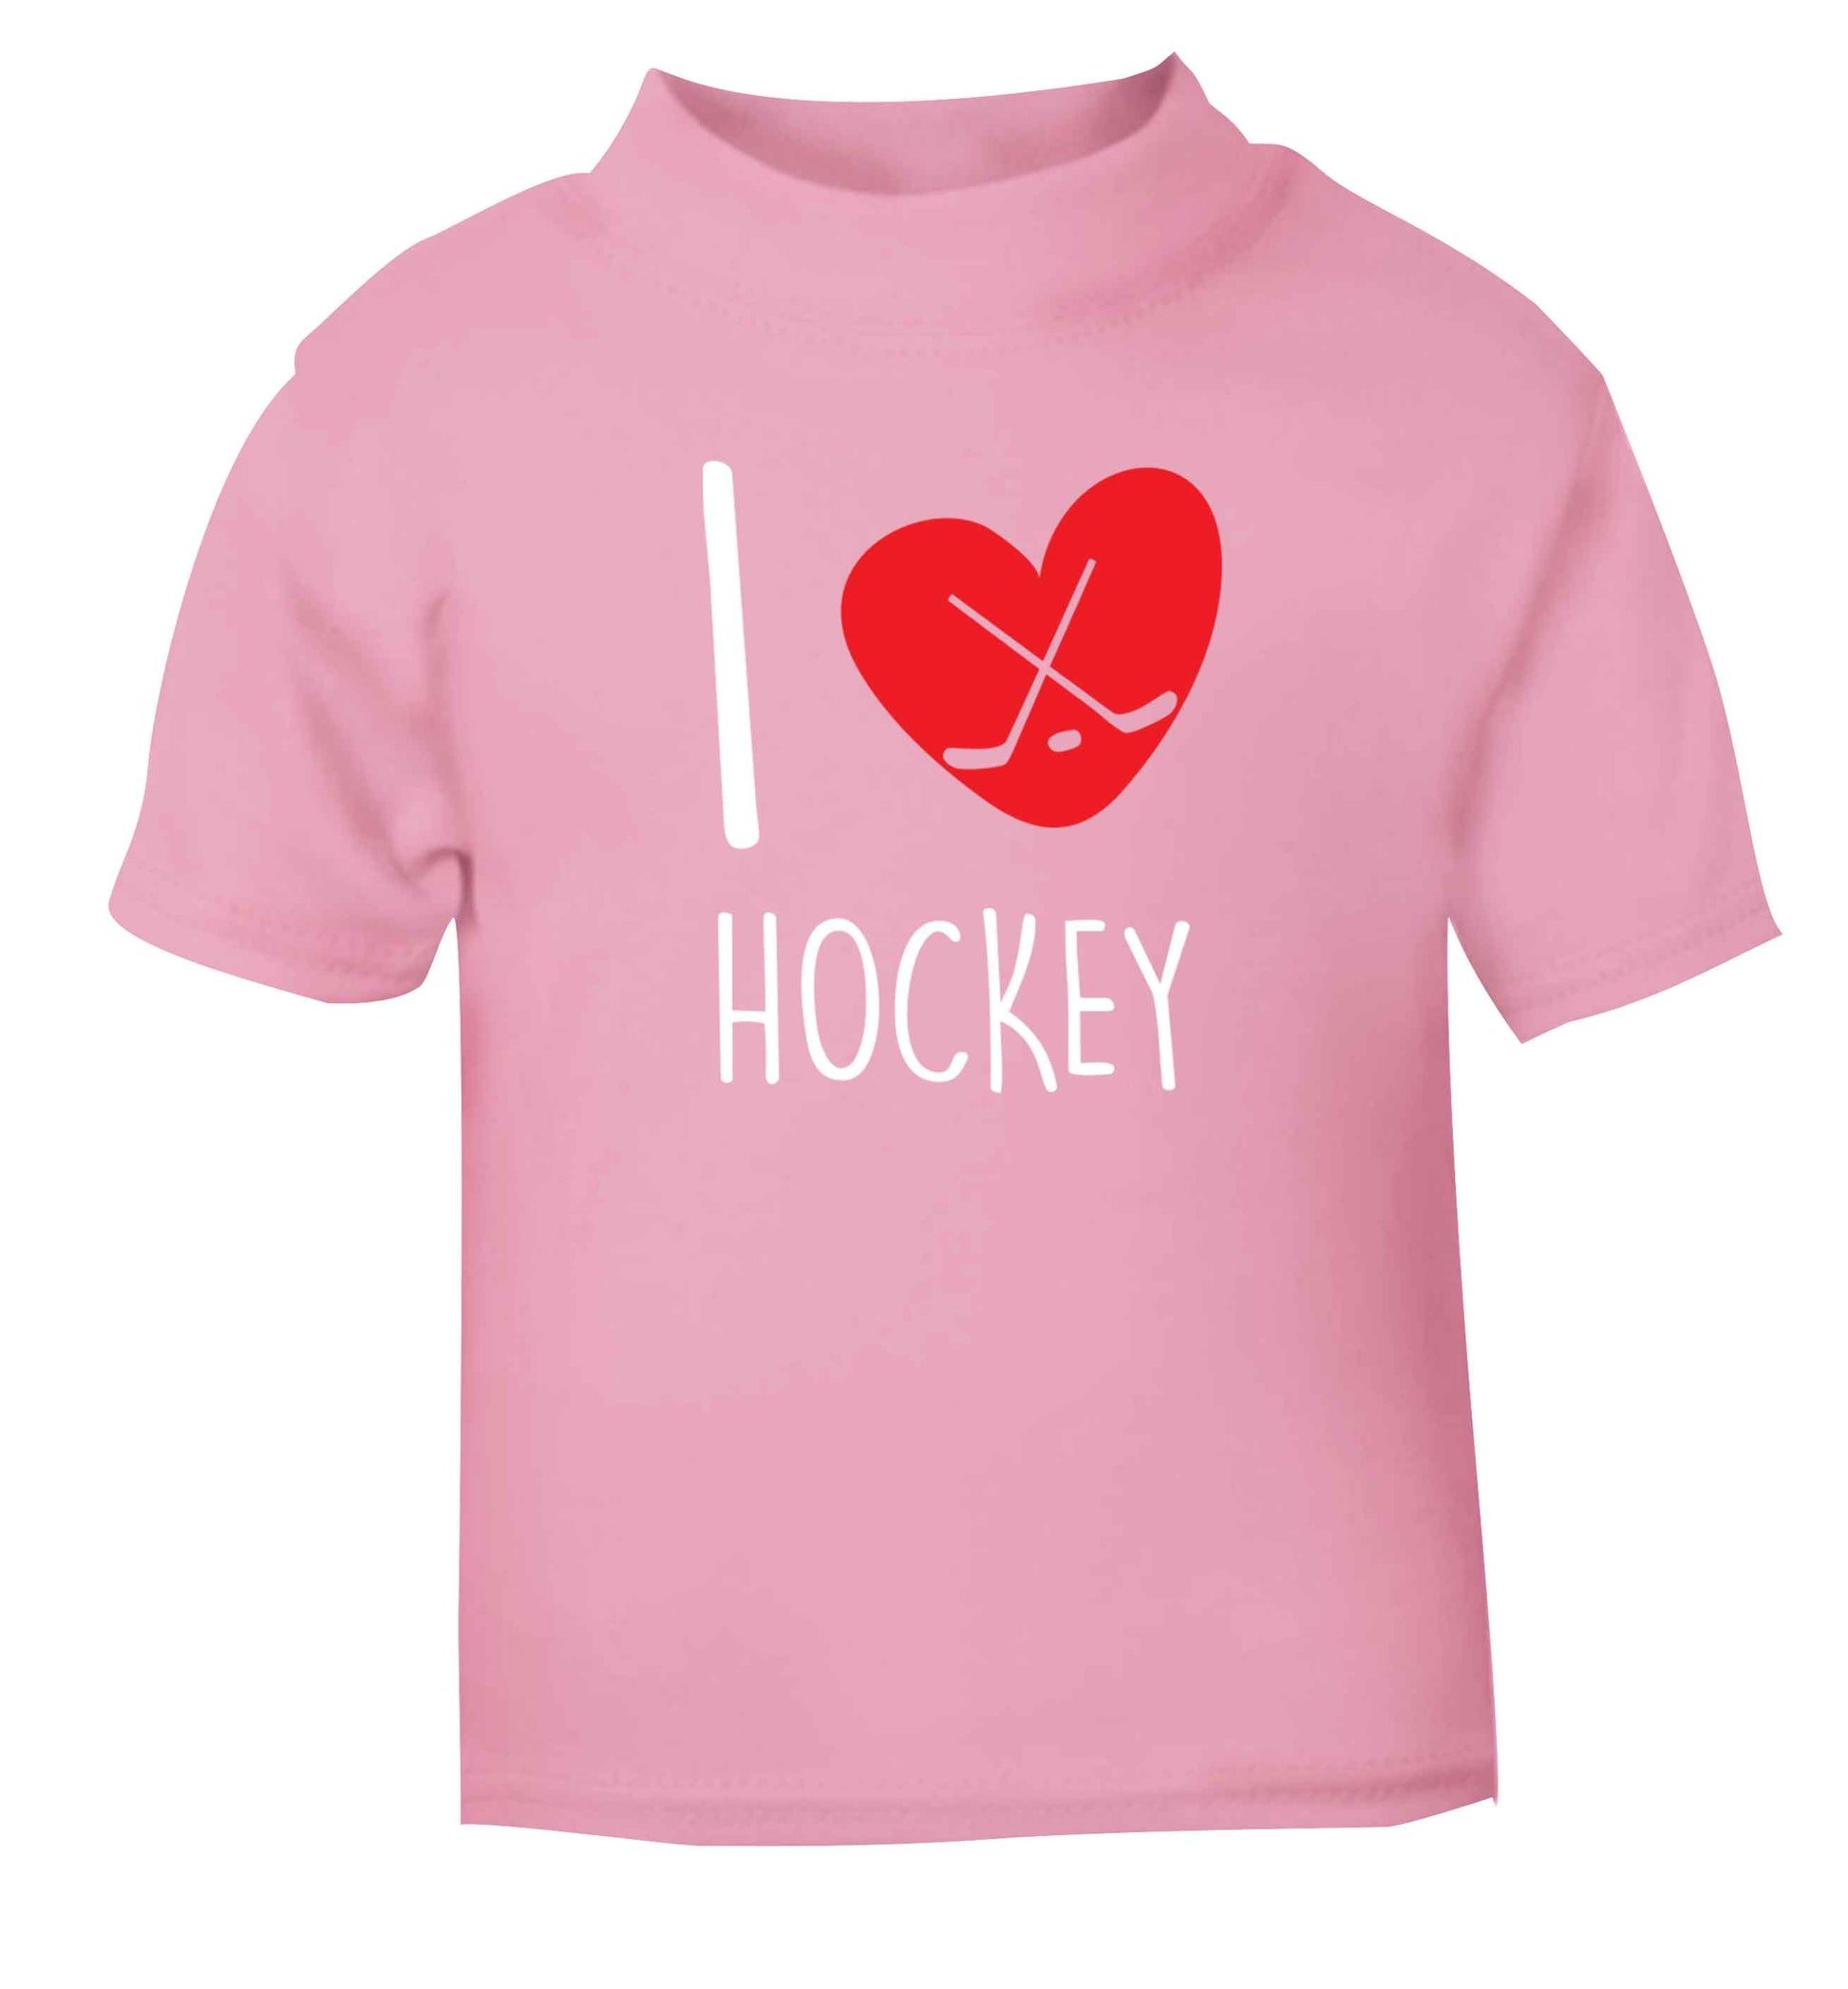 I love hockey light pink Baby Toddler Tshirt 2 Years